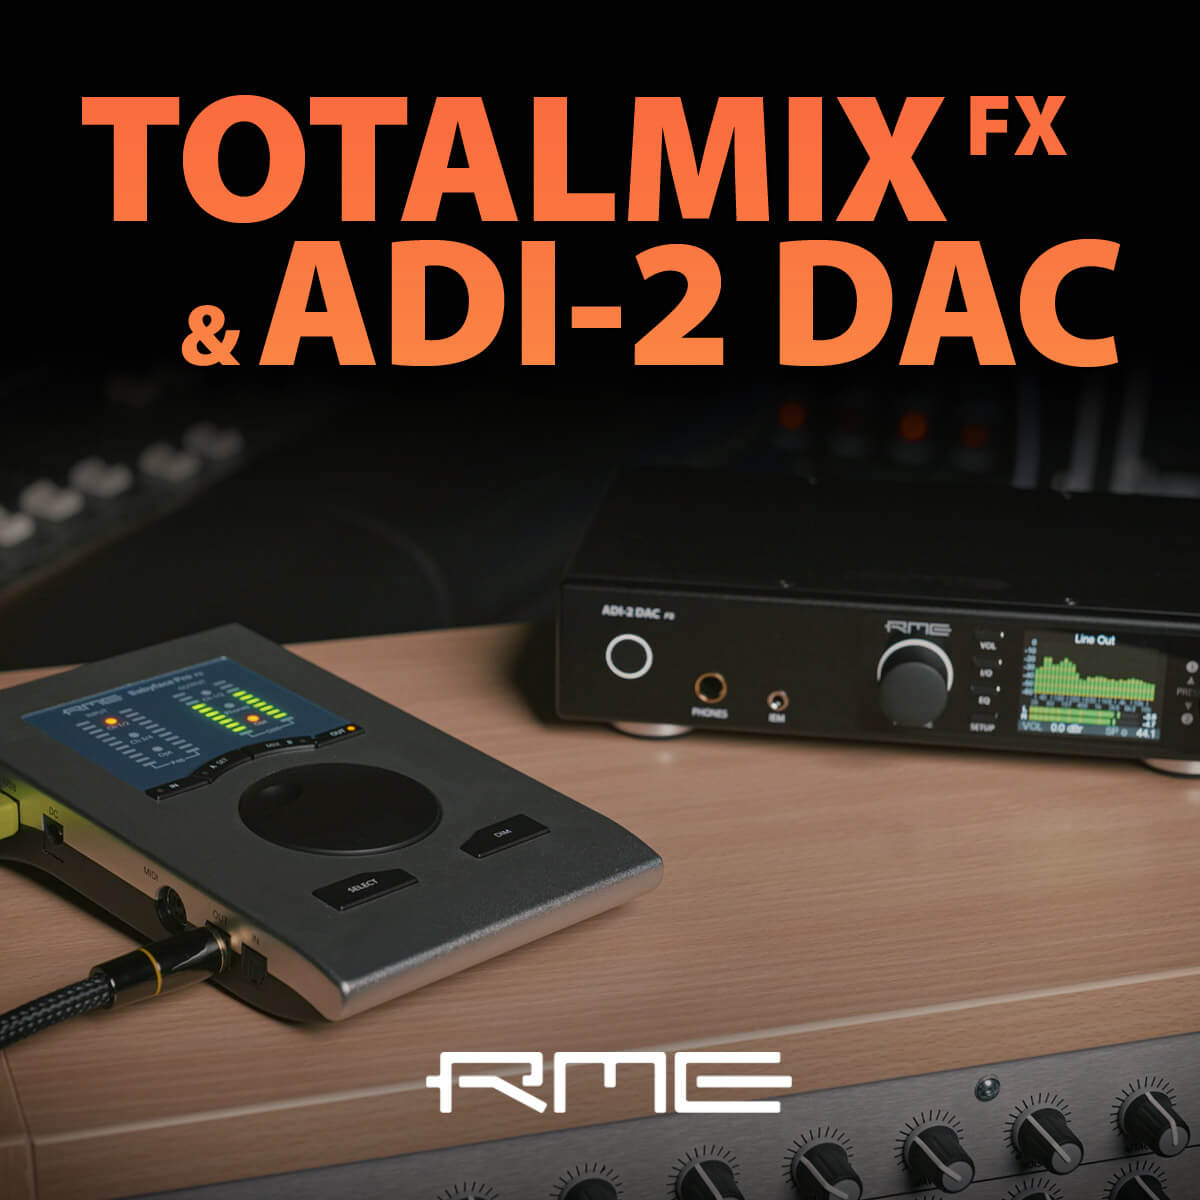 Einrichtung des ADI-2 DAC FS mit TotalMix FX